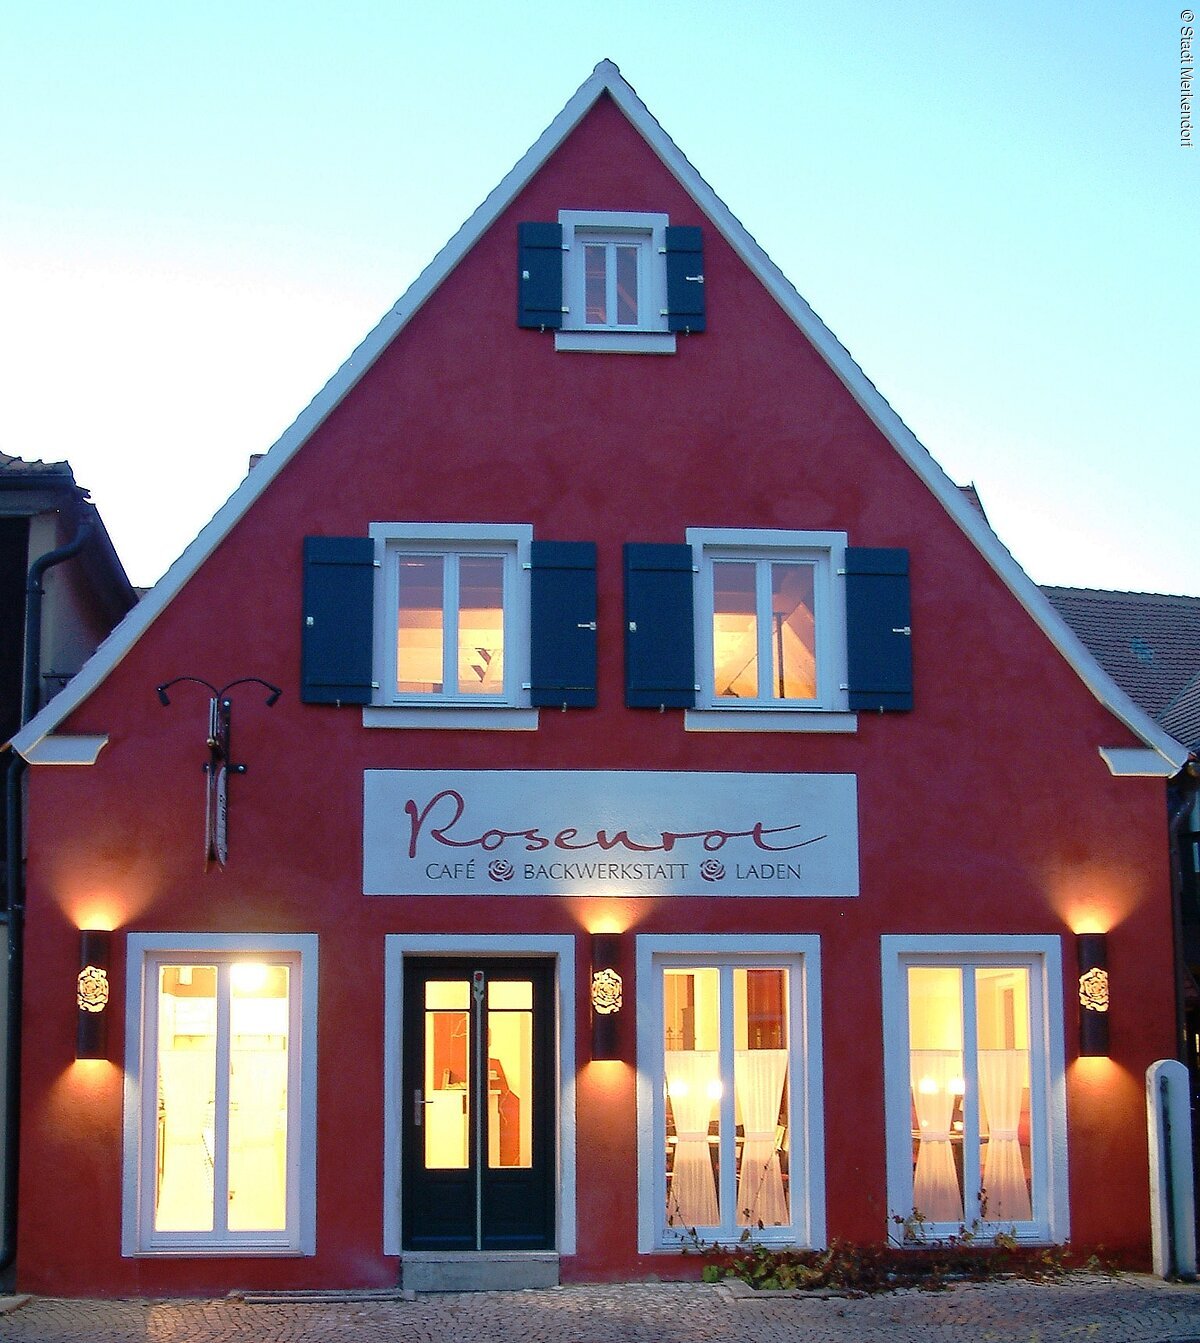 Café Rosenrot in Merkendorf